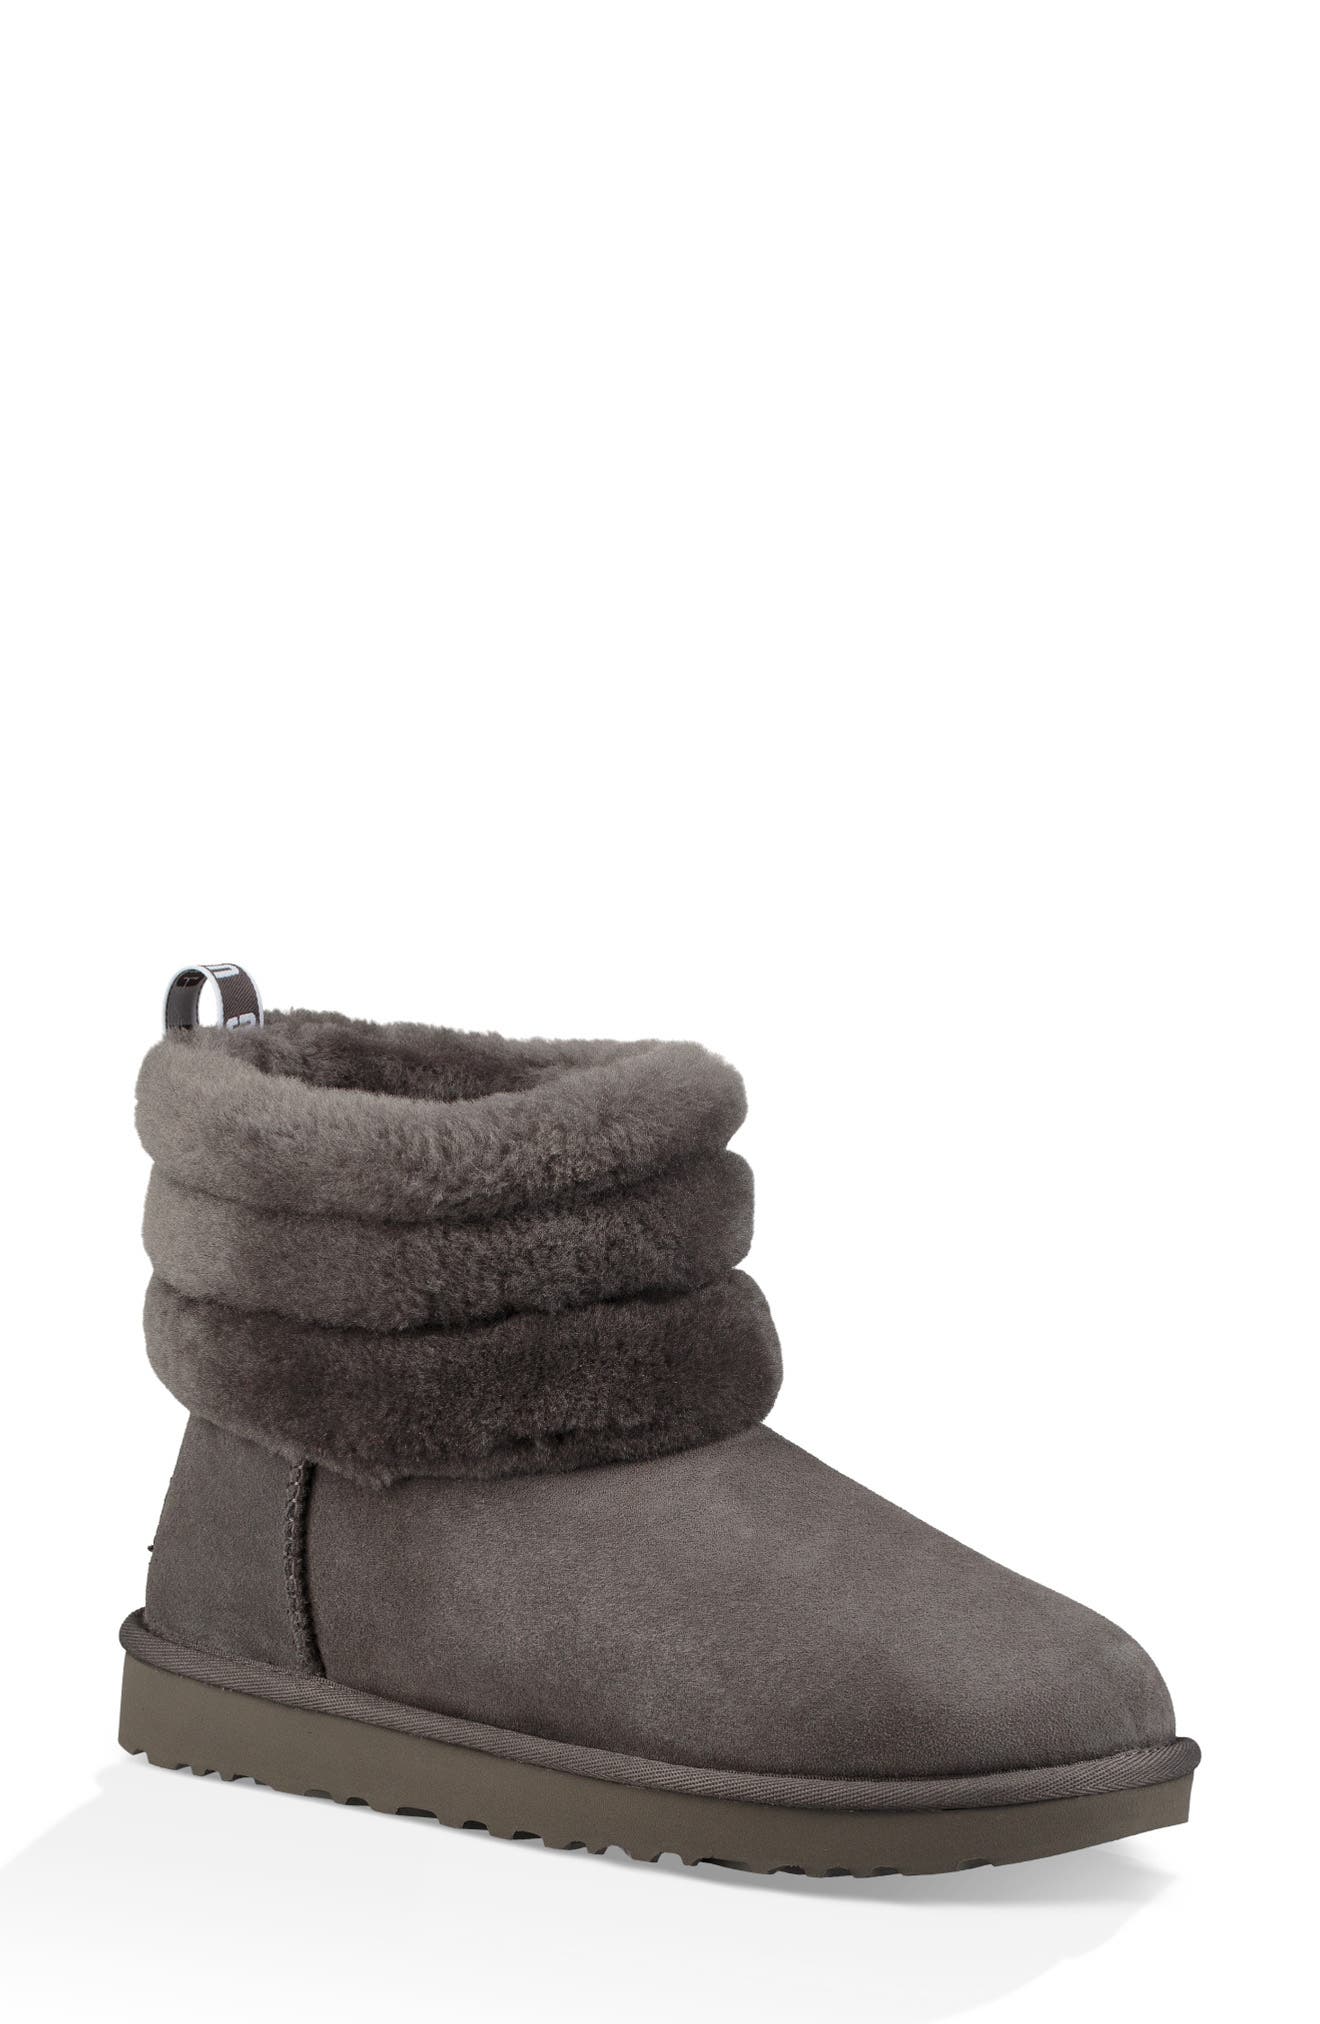 Women's Winter \u0026 Snow Boots | Nordstrom